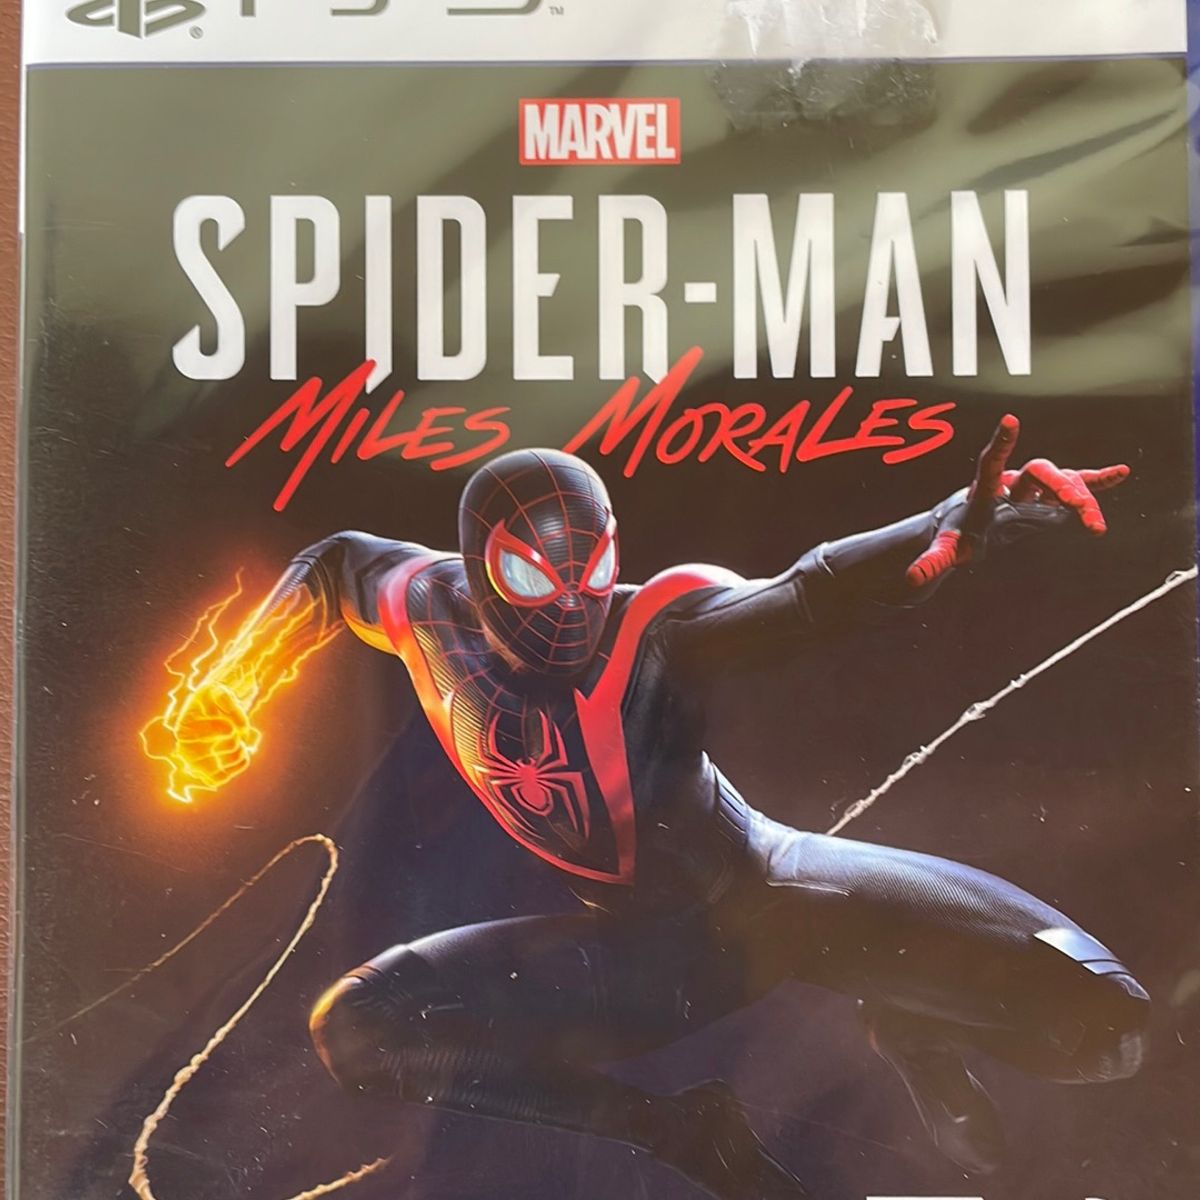 Spider-Man Miles Morales Ps3, Jogo de Videogame Playstation Nunca Usado  82135470